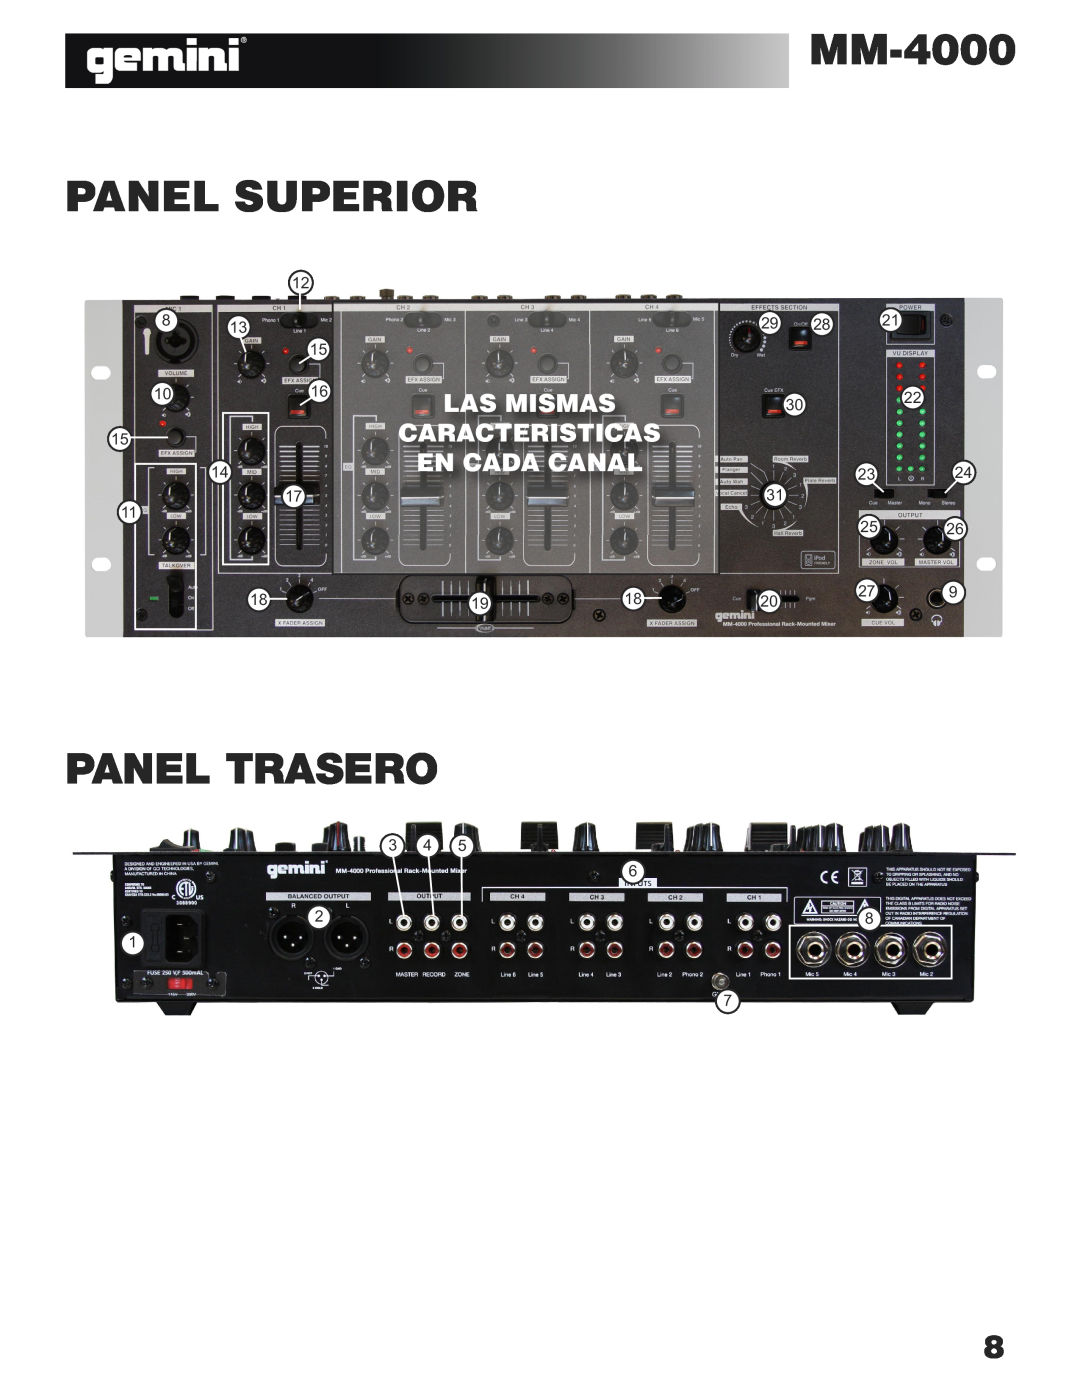 Gemini MM-4000 manual Panel Superior, Panel Trasero, Las Mismas Caracteristicas En Cada Canal 